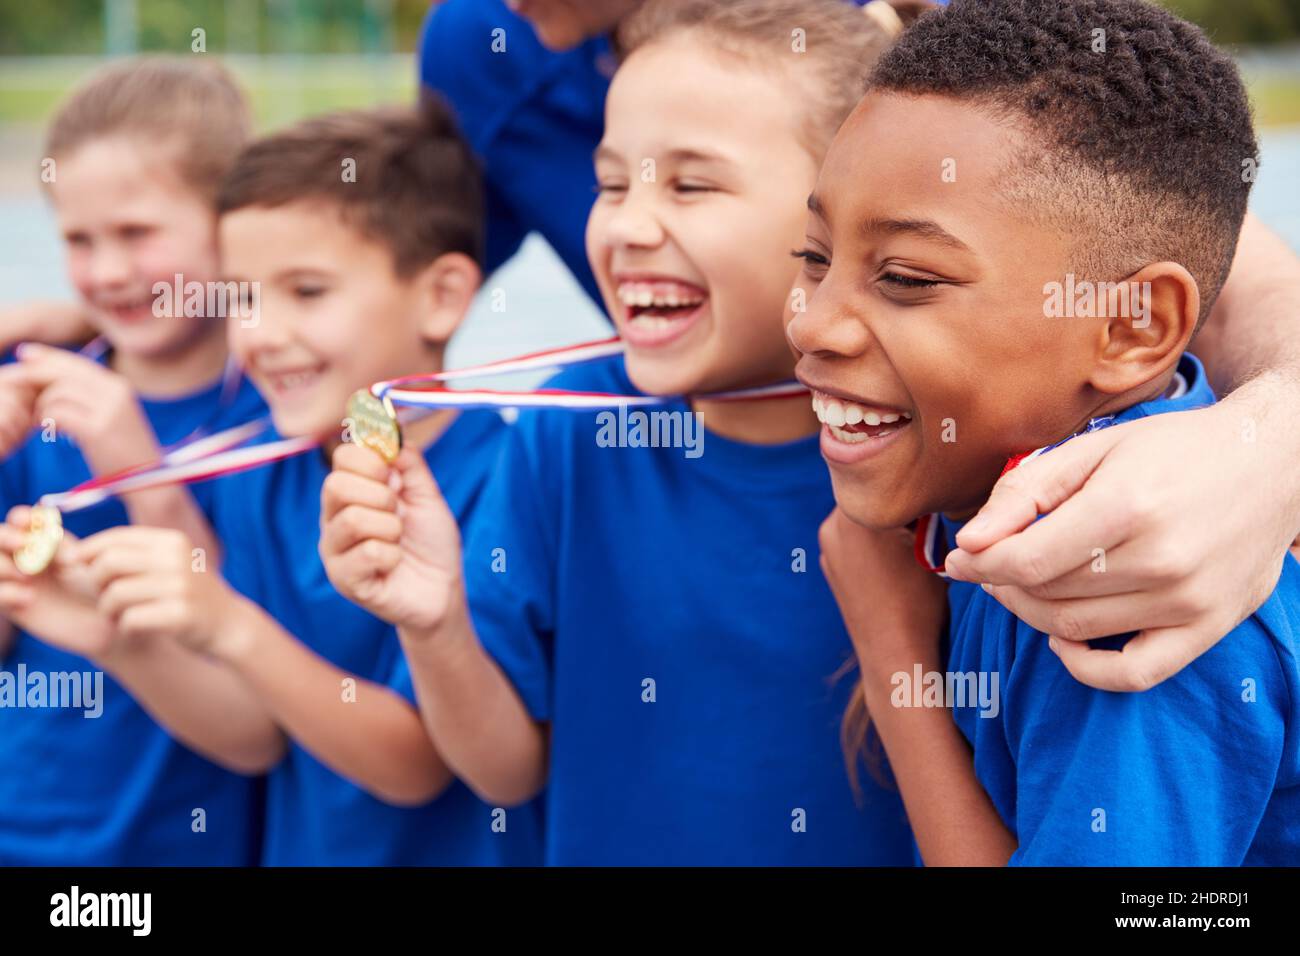 winners, joy, pride, team, medal, winner, happiness, joys, prides.proud, teams, medals Stock Photo